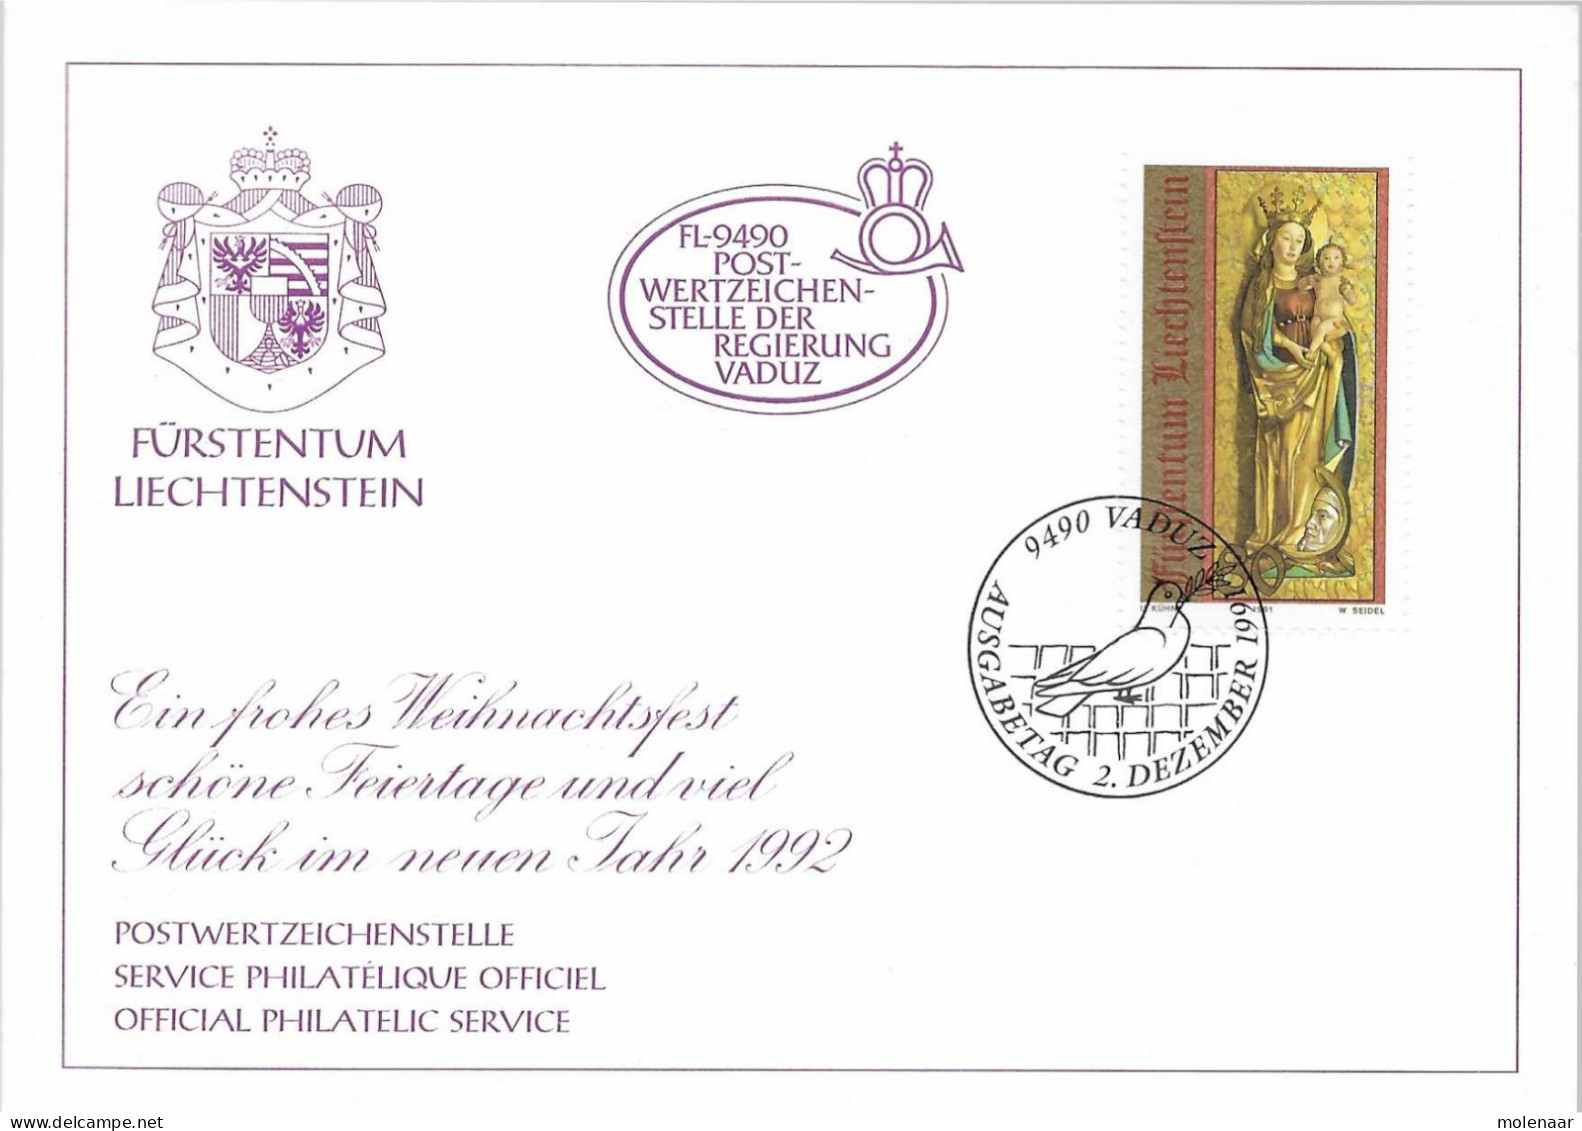 Postzegels > Europa > Liechtenstein > 1991-00 >kaart Met No. 1032 (17567) - Briefe U. Dokumente